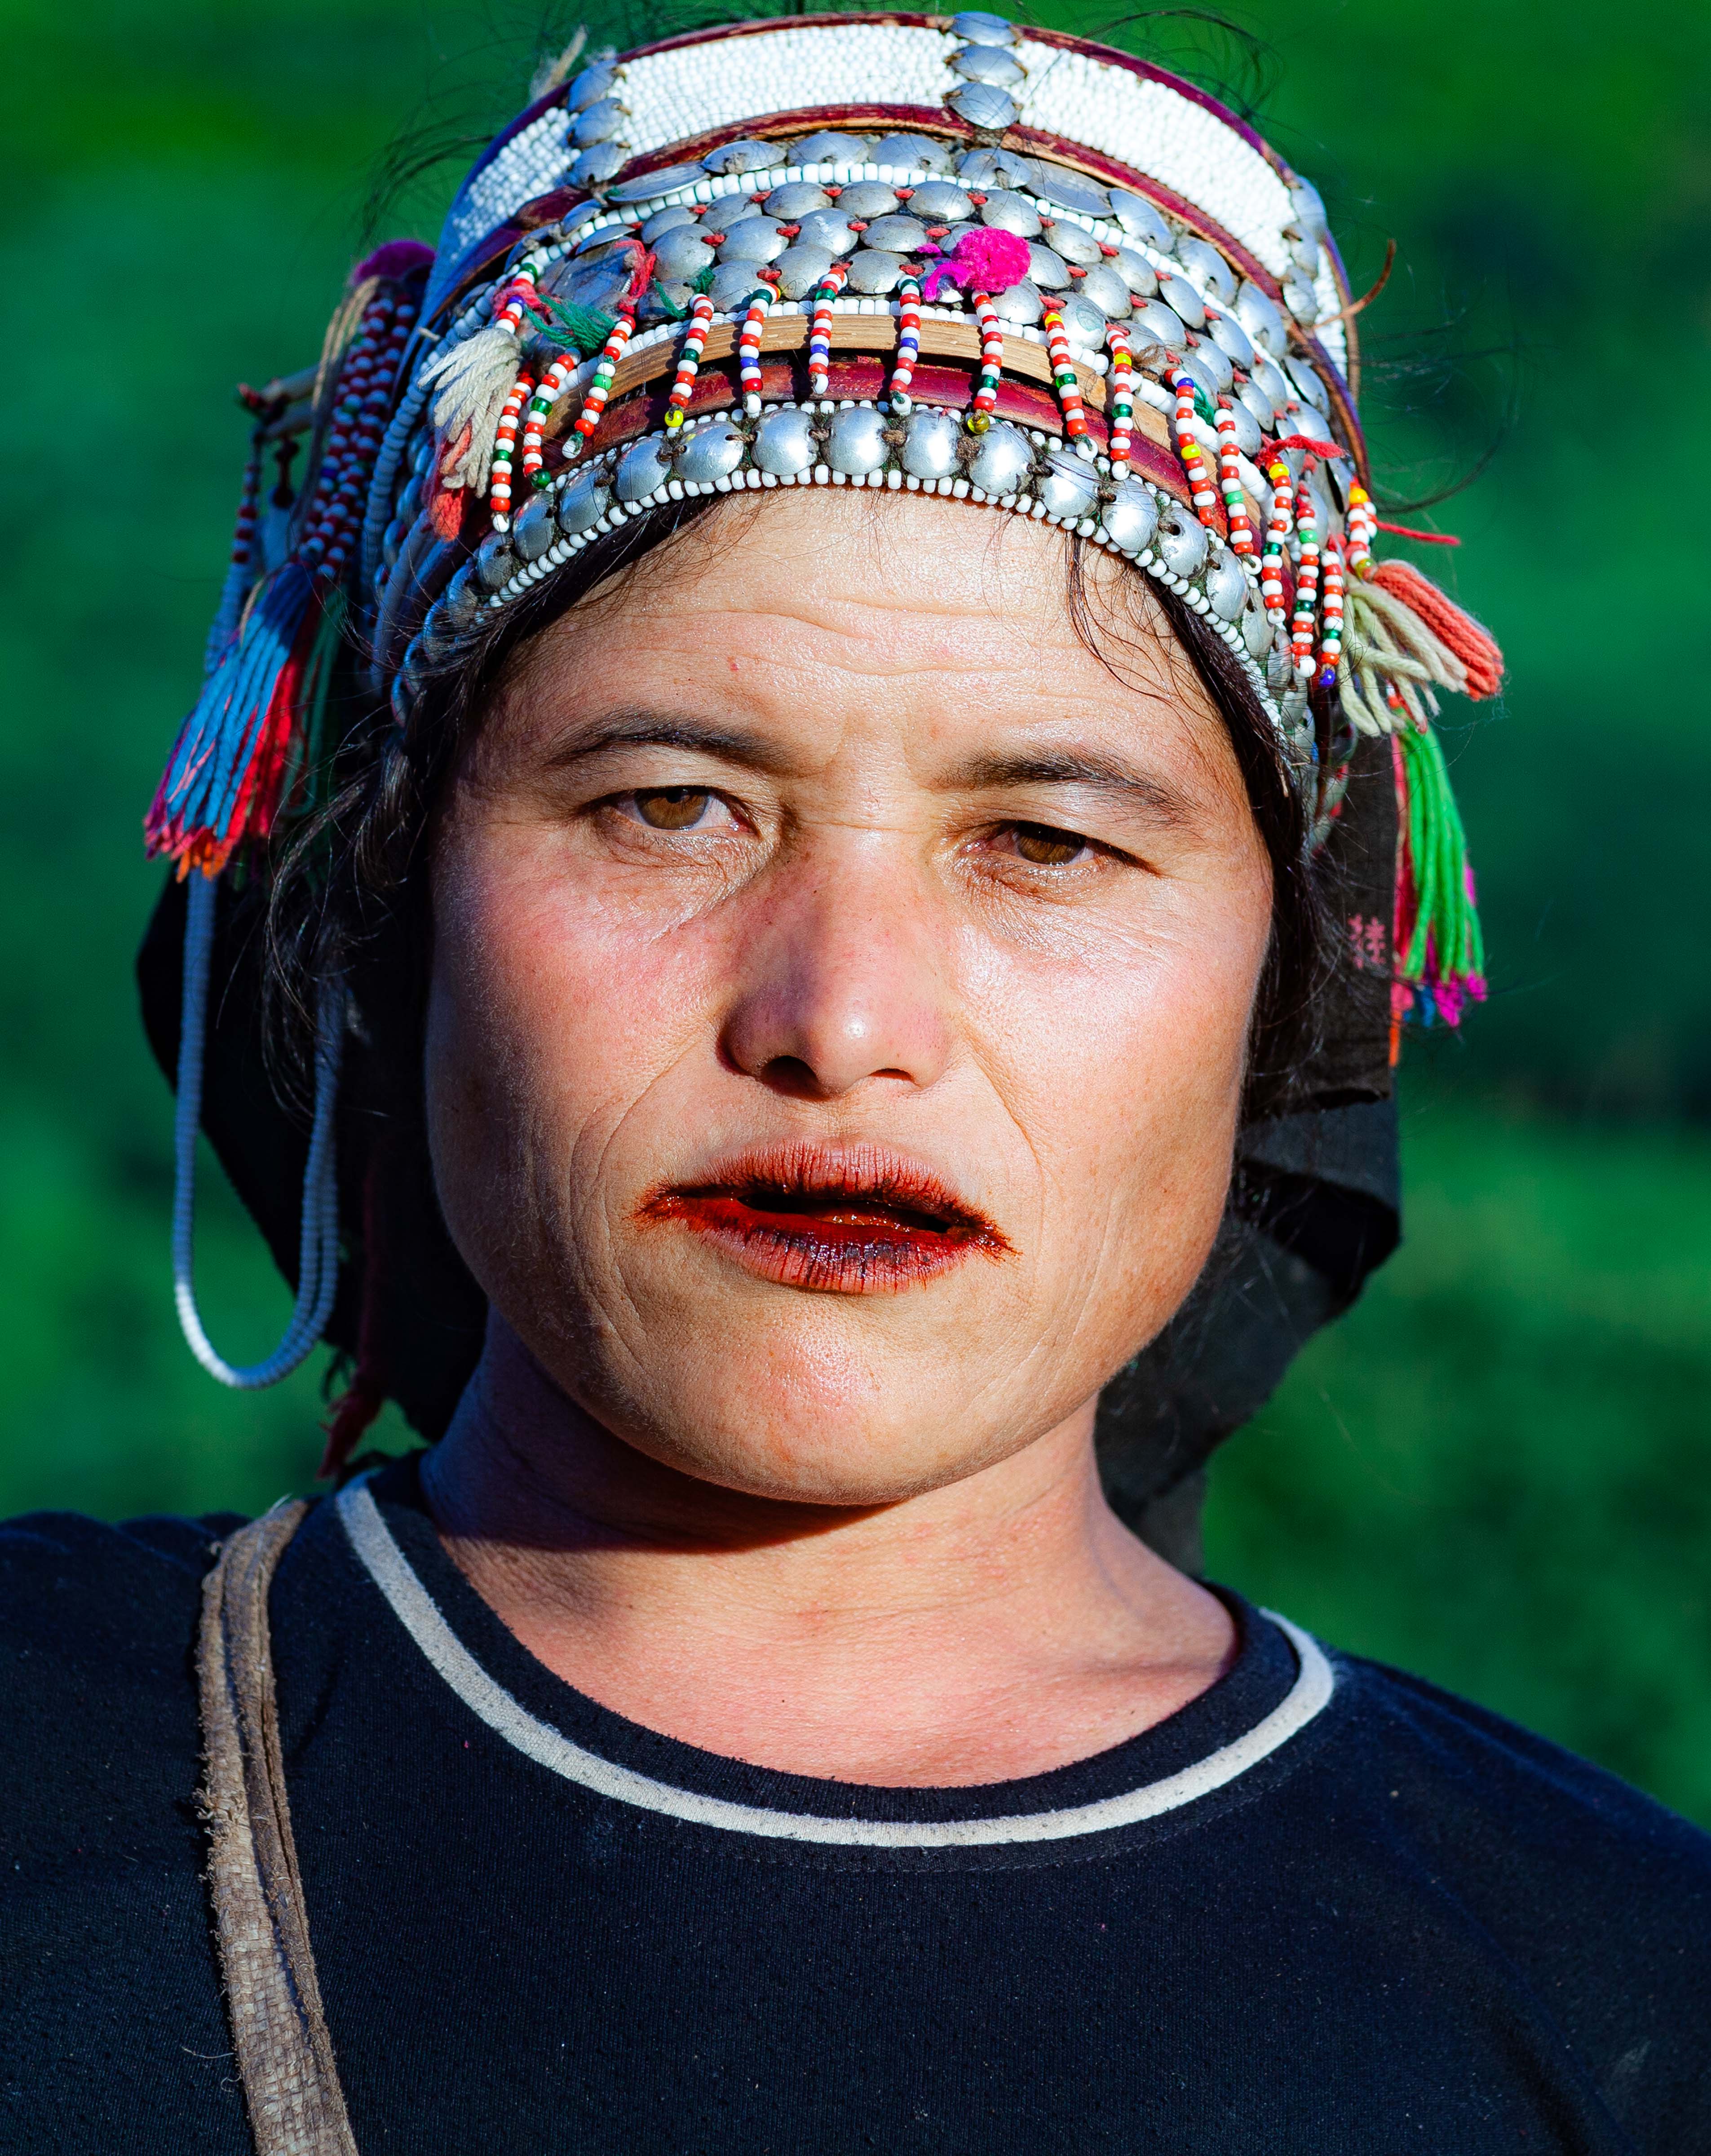 Laos, Louang Namtha Prov, Akha Woman, 2011, IMG 0239